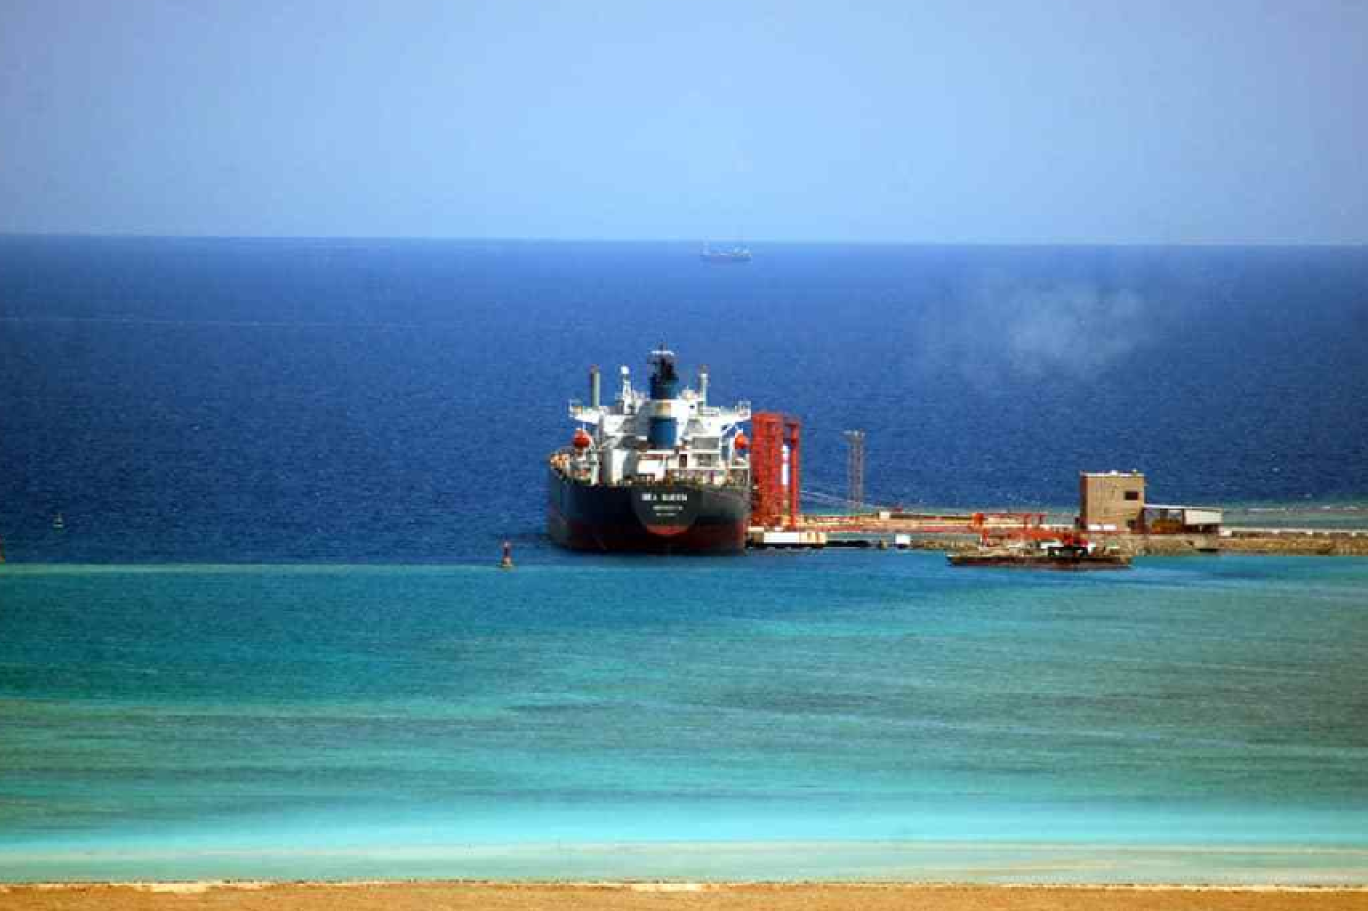 السعودية تسعى لتصبح قوة بحرية وازنة.. وتستعد لإطلاق شركة "خطوط فرعية" جديدة في البحر الأحمر